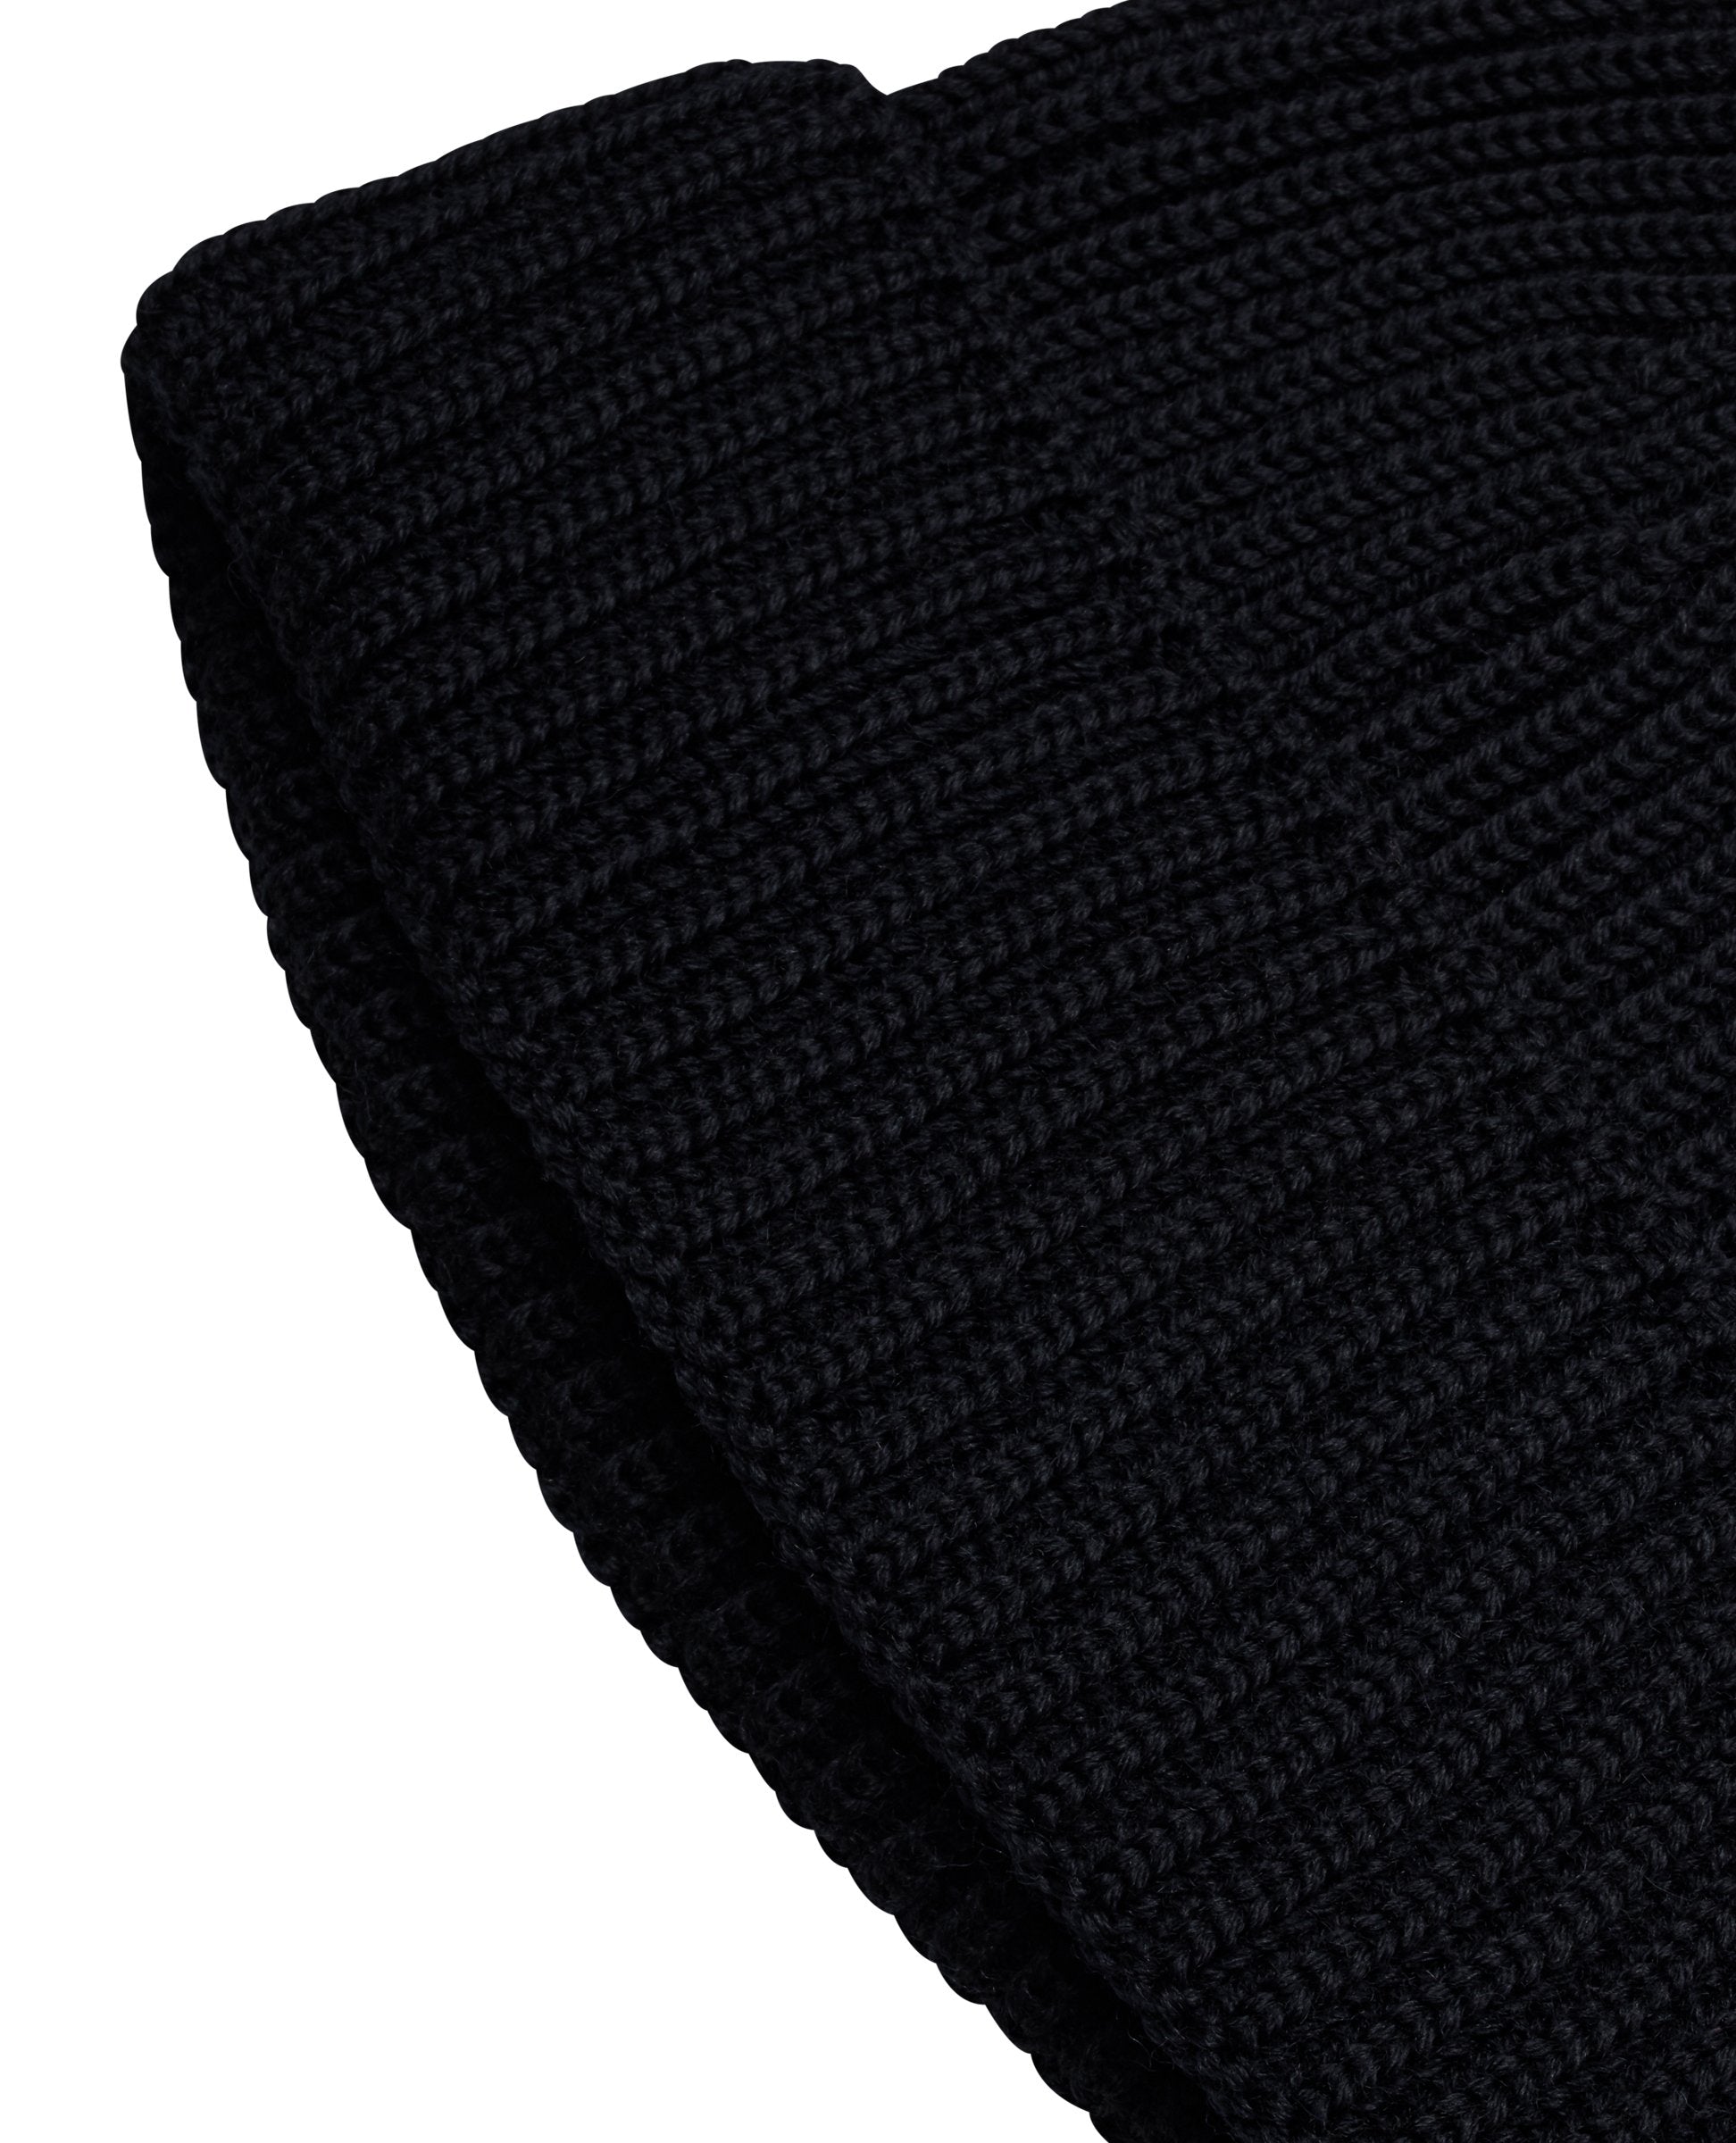 FENDER hat | black [0] (M) | S. N. S. HERNING – S. N. S. HERNING [ EUR ]